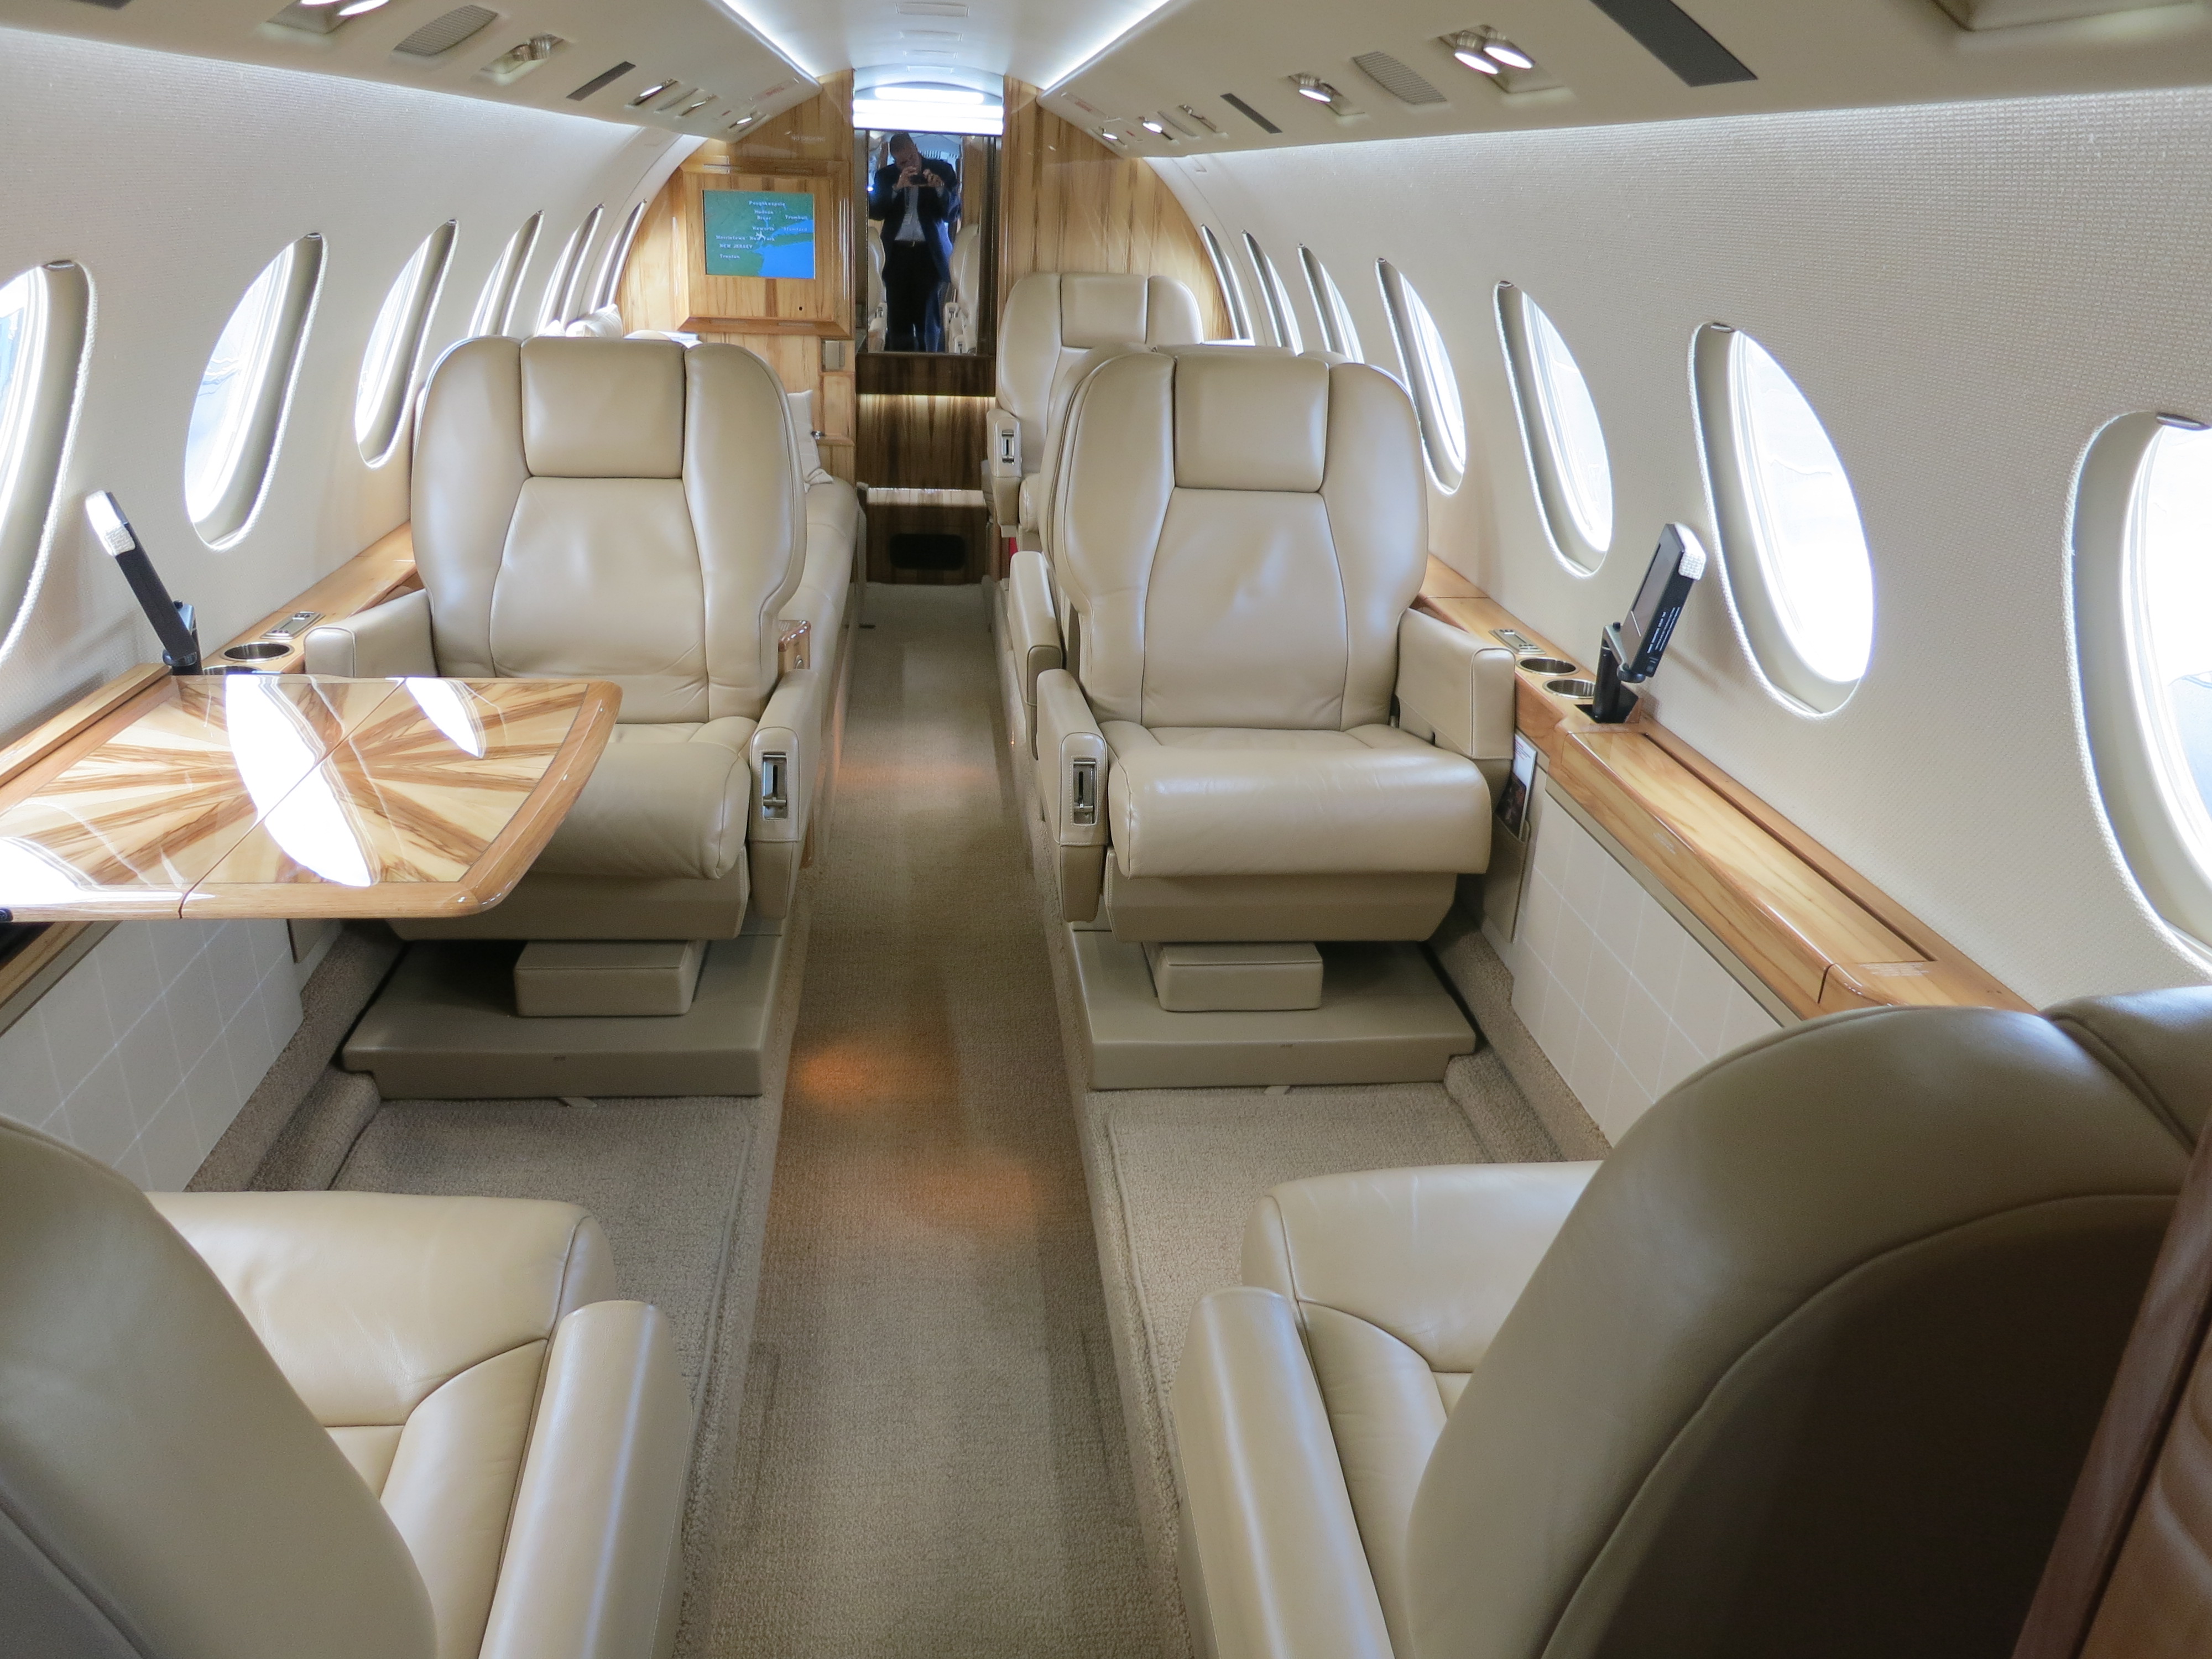 Dassault Falcon 50 cabin interior